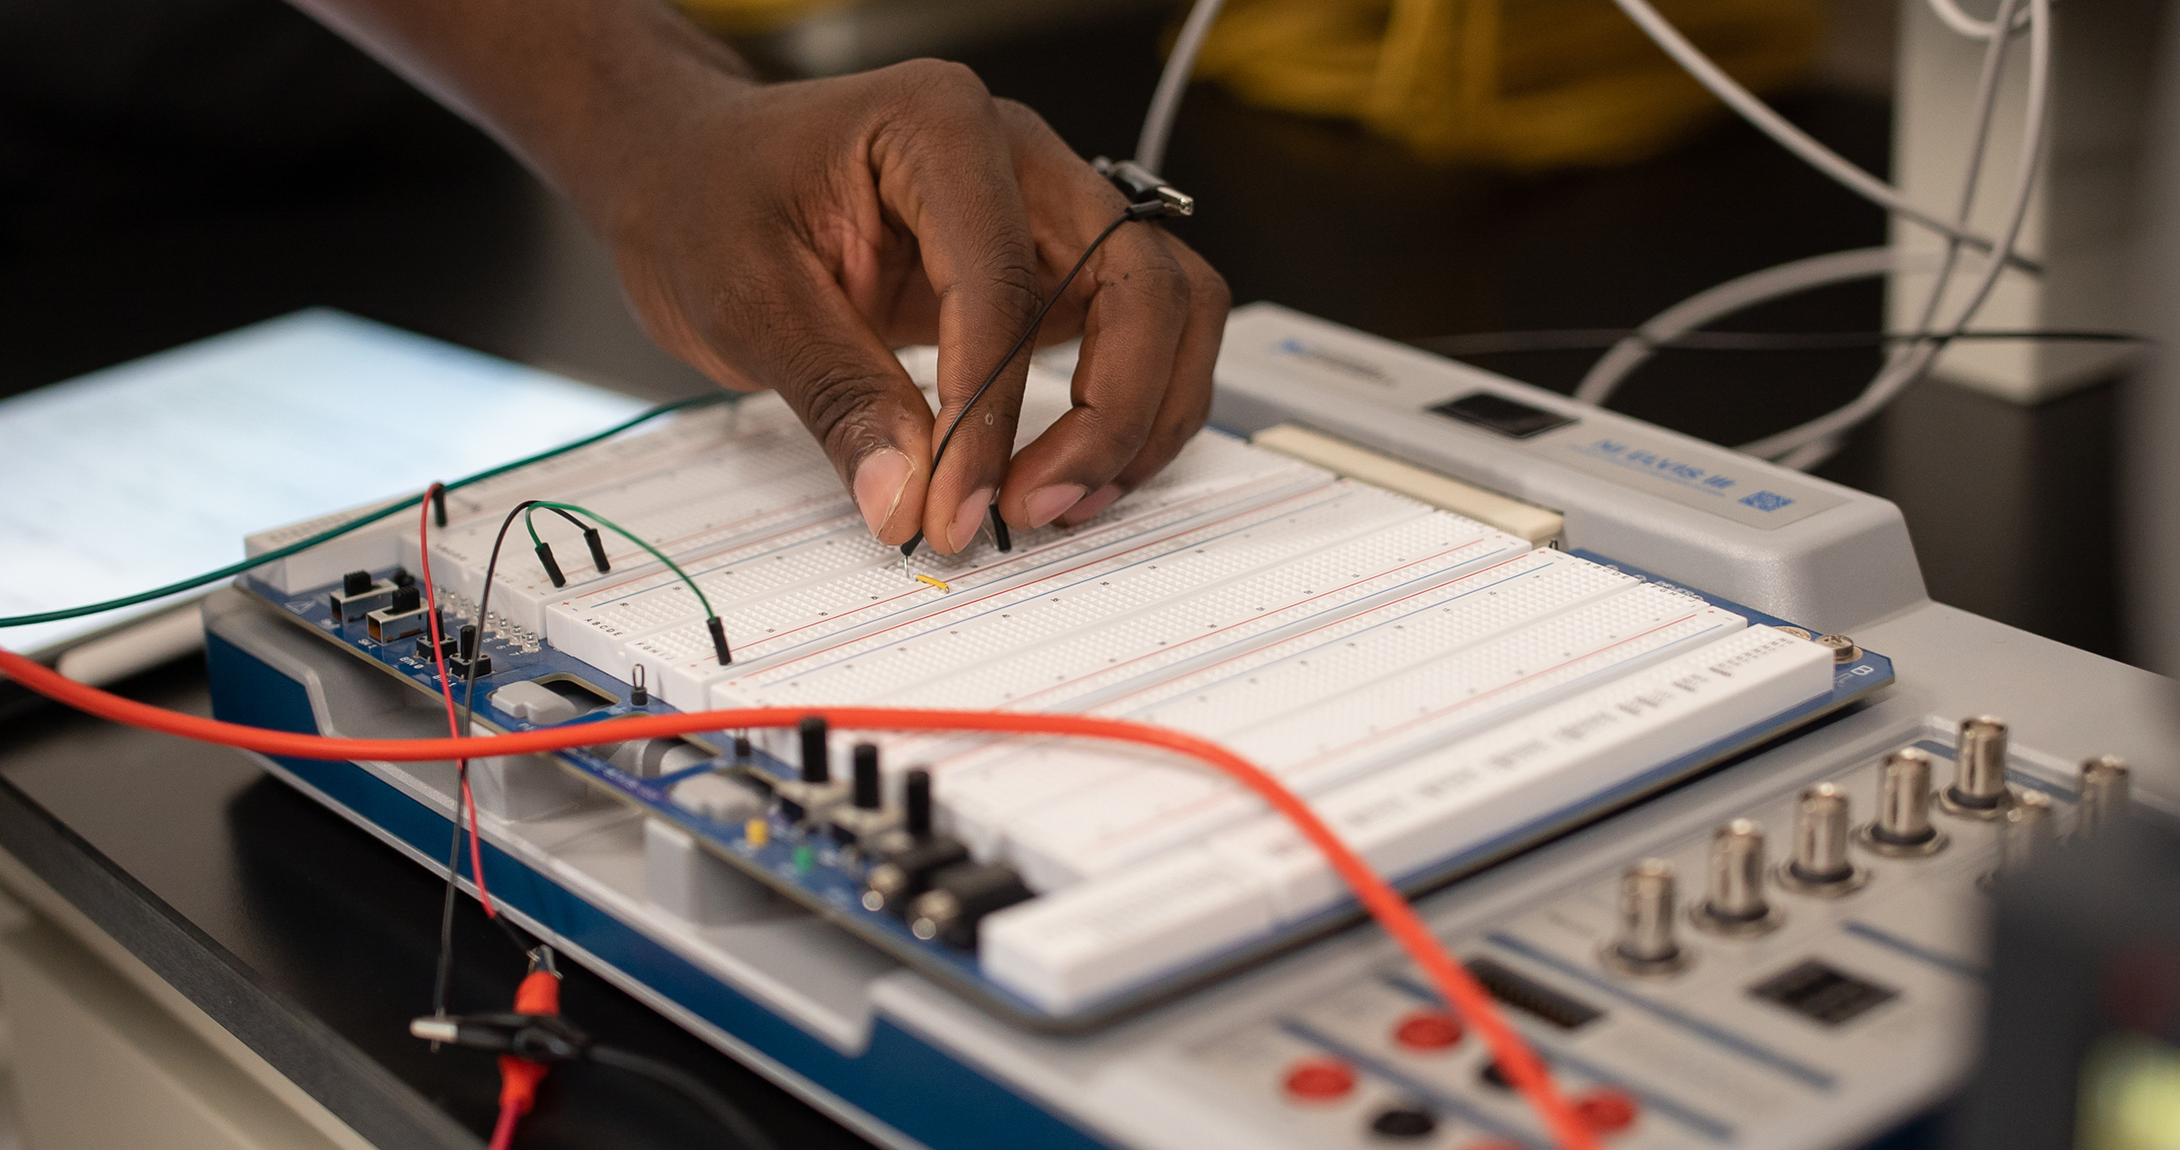 Estudiante trabajando en placa de circuito